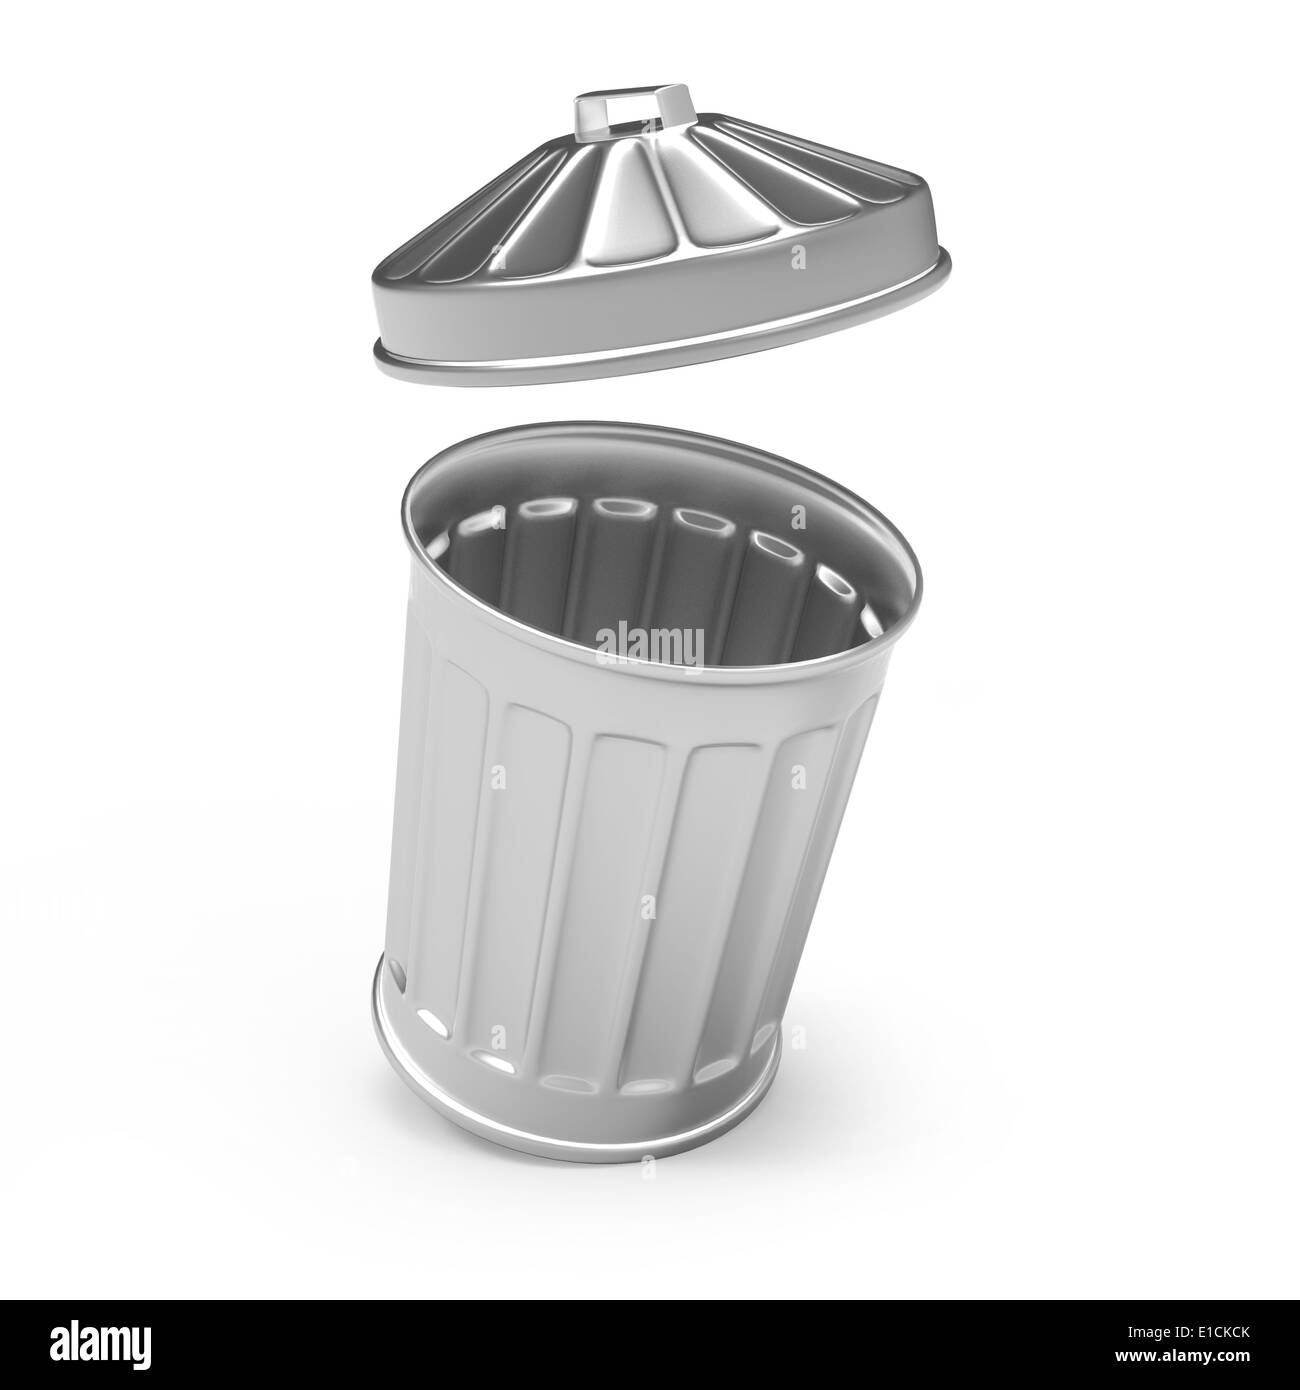 3d Steel waste bin with lid flying open Stock Photo